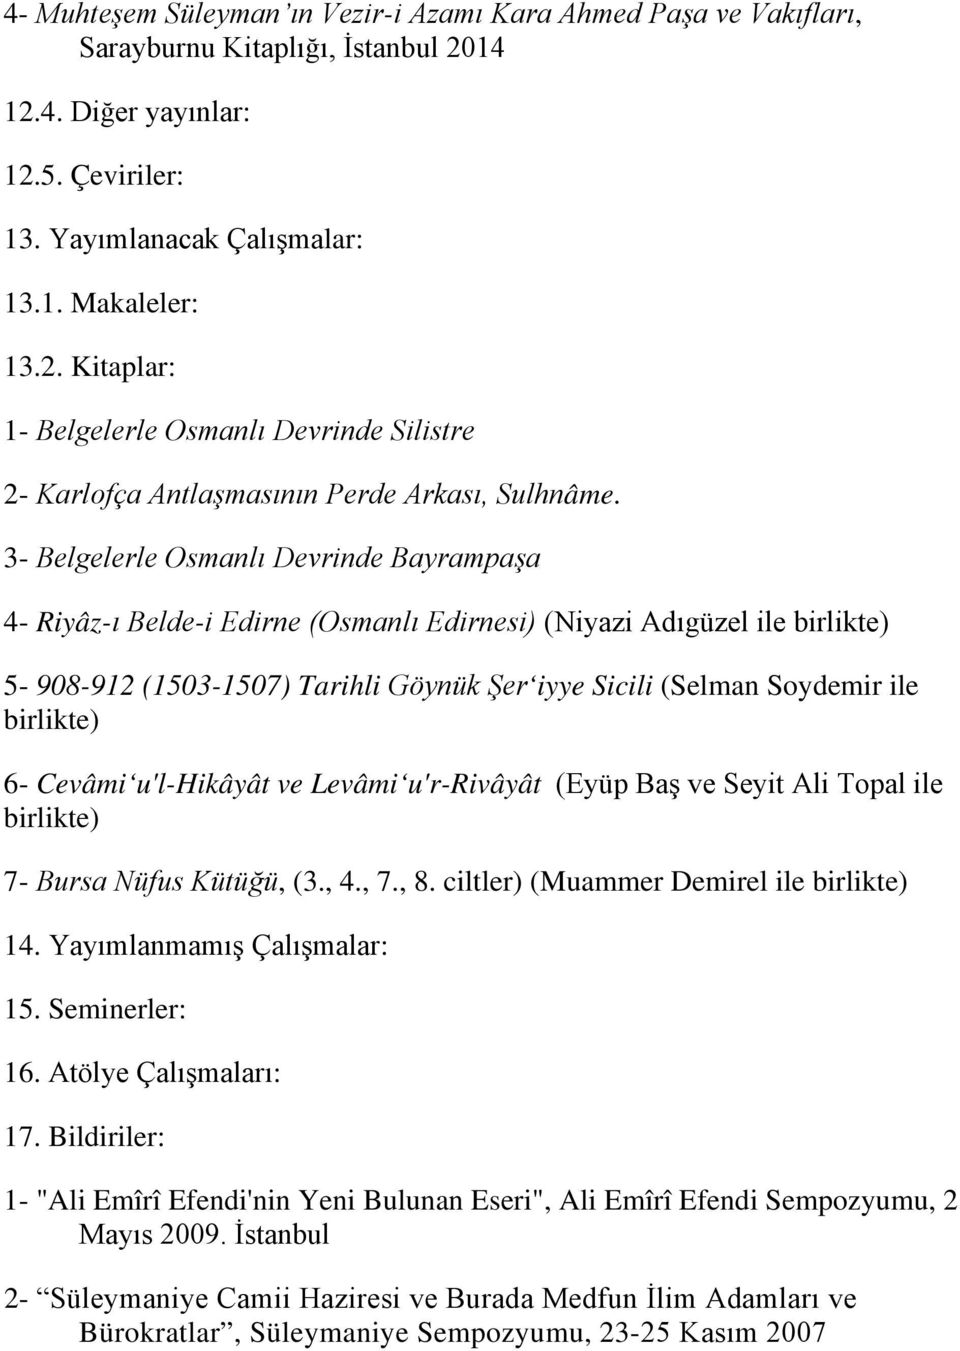 3- Belgelerle Osmanlı Devrinde Bayrampaşa 4- Riyâz-ı Belde-i Edirne (Osmanlı Edirnesi) (Niyazi Adıgüzel ile 5-908-912 (1503-1507) Tarihli Göynük Şer iyye Sicili (Selman Soydemir ile 6- Cevâmi